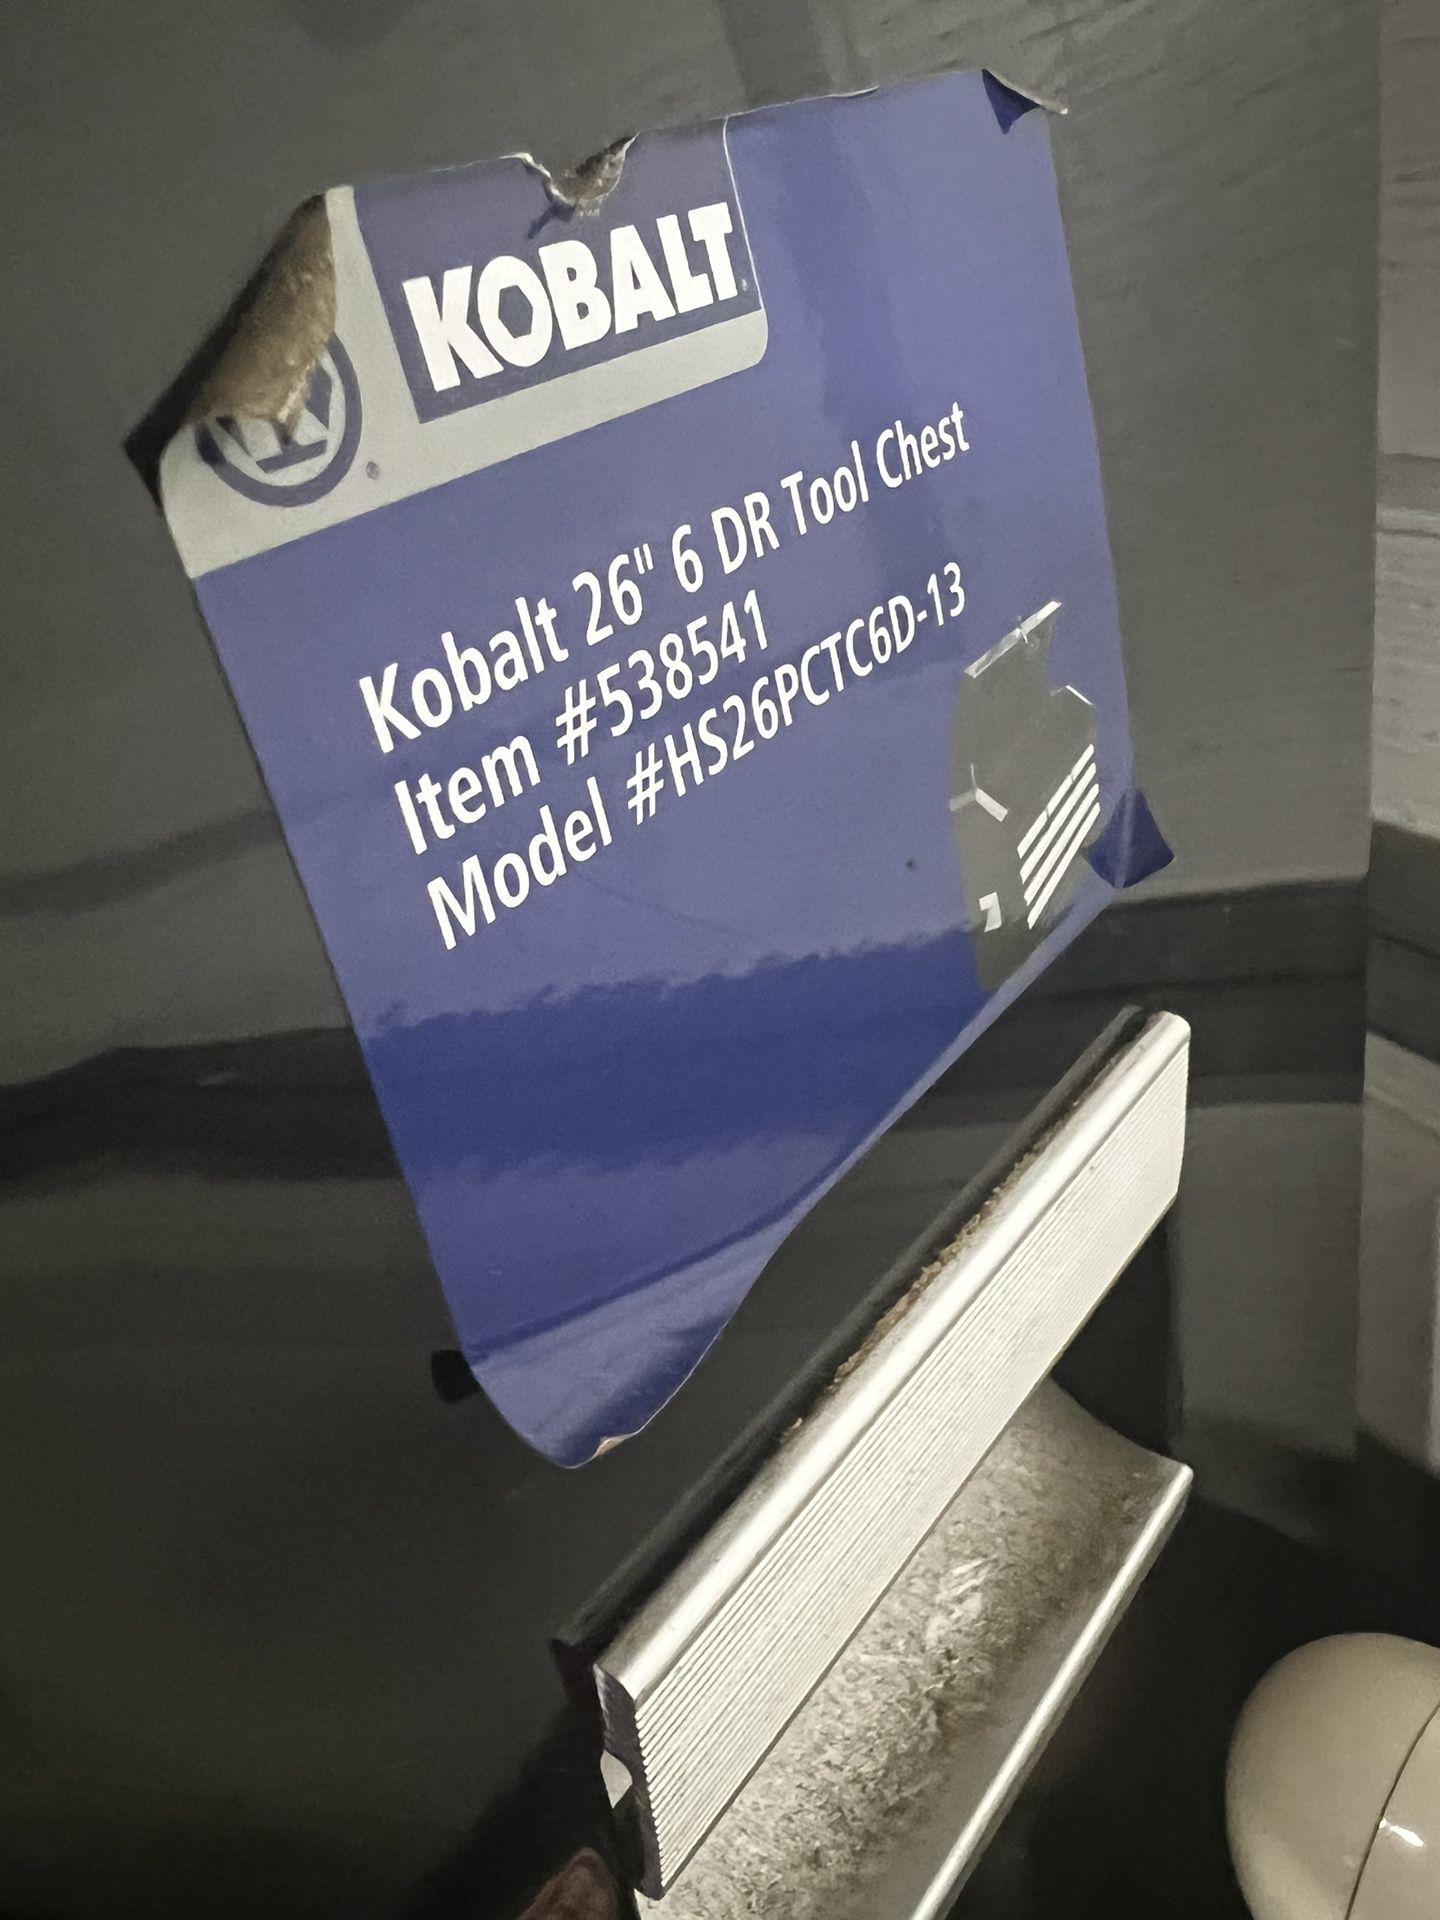 Kobalt Tool Chest